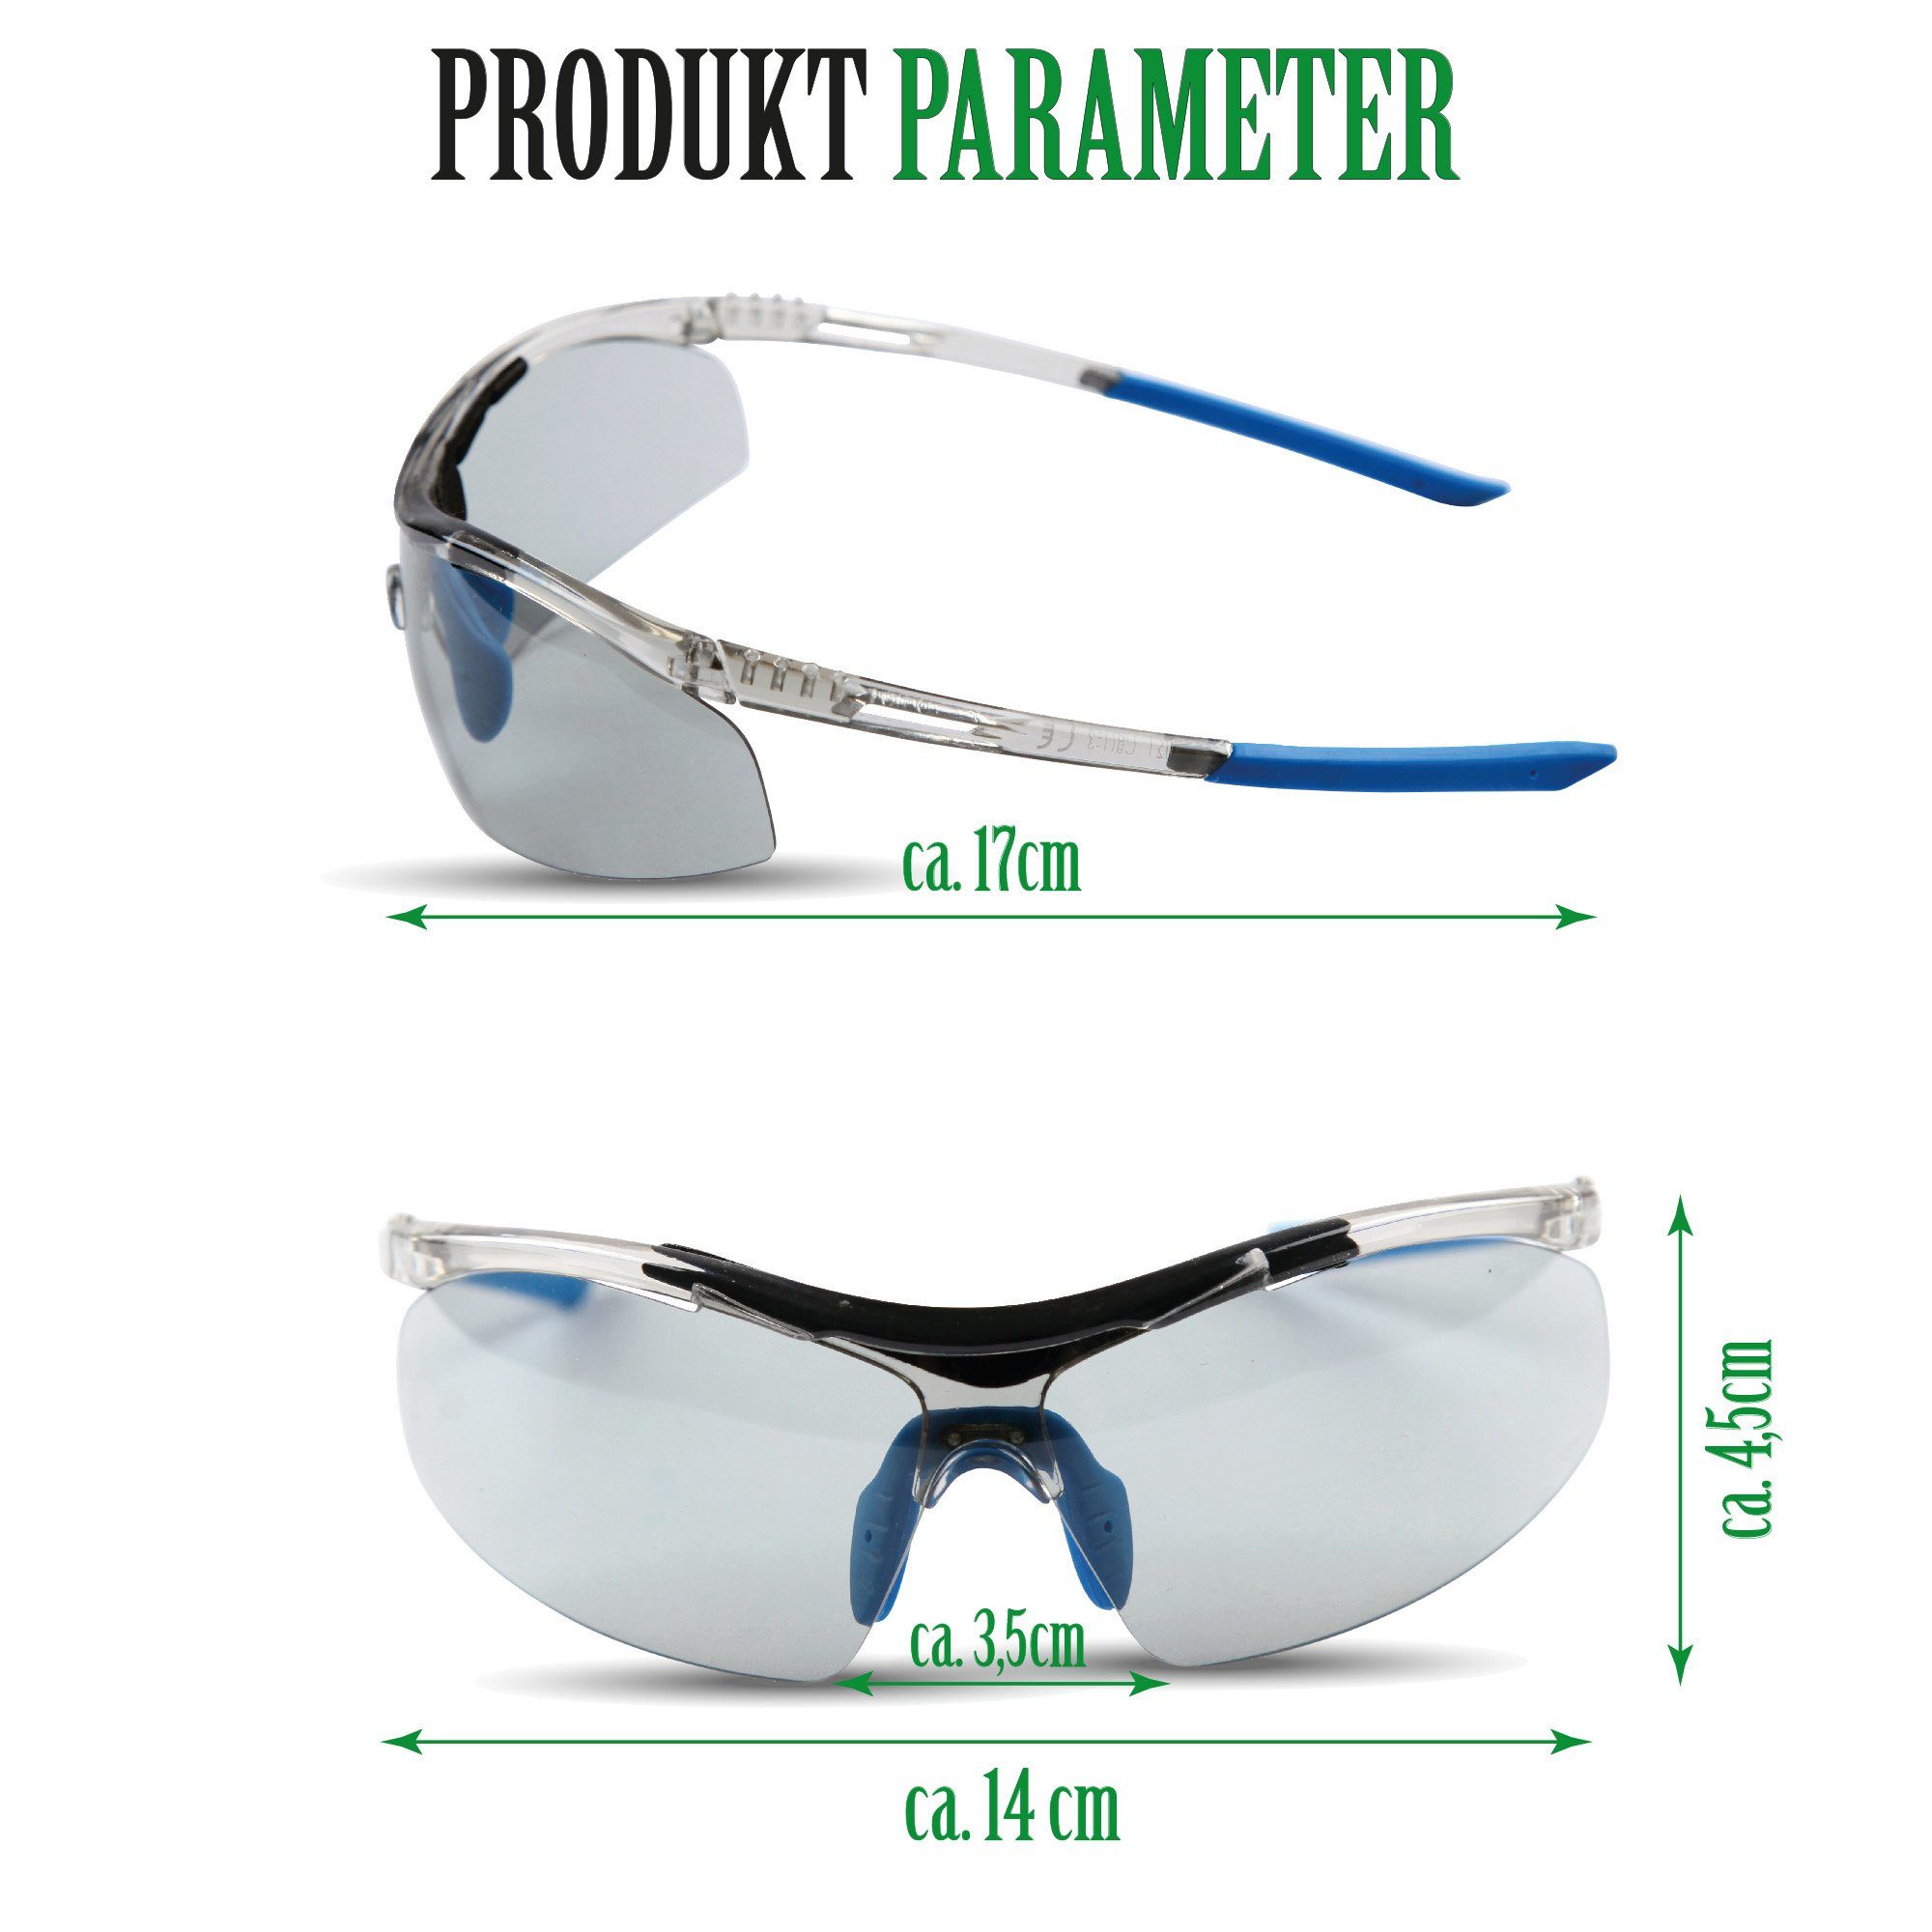 Bestlivings Sportbrille 06498 Blau - sonnenschutz Skibrille, UV-Schutzbrille Fahrradbrille Sportsonnenbrille, - 1-St), (Packung, selbstönende